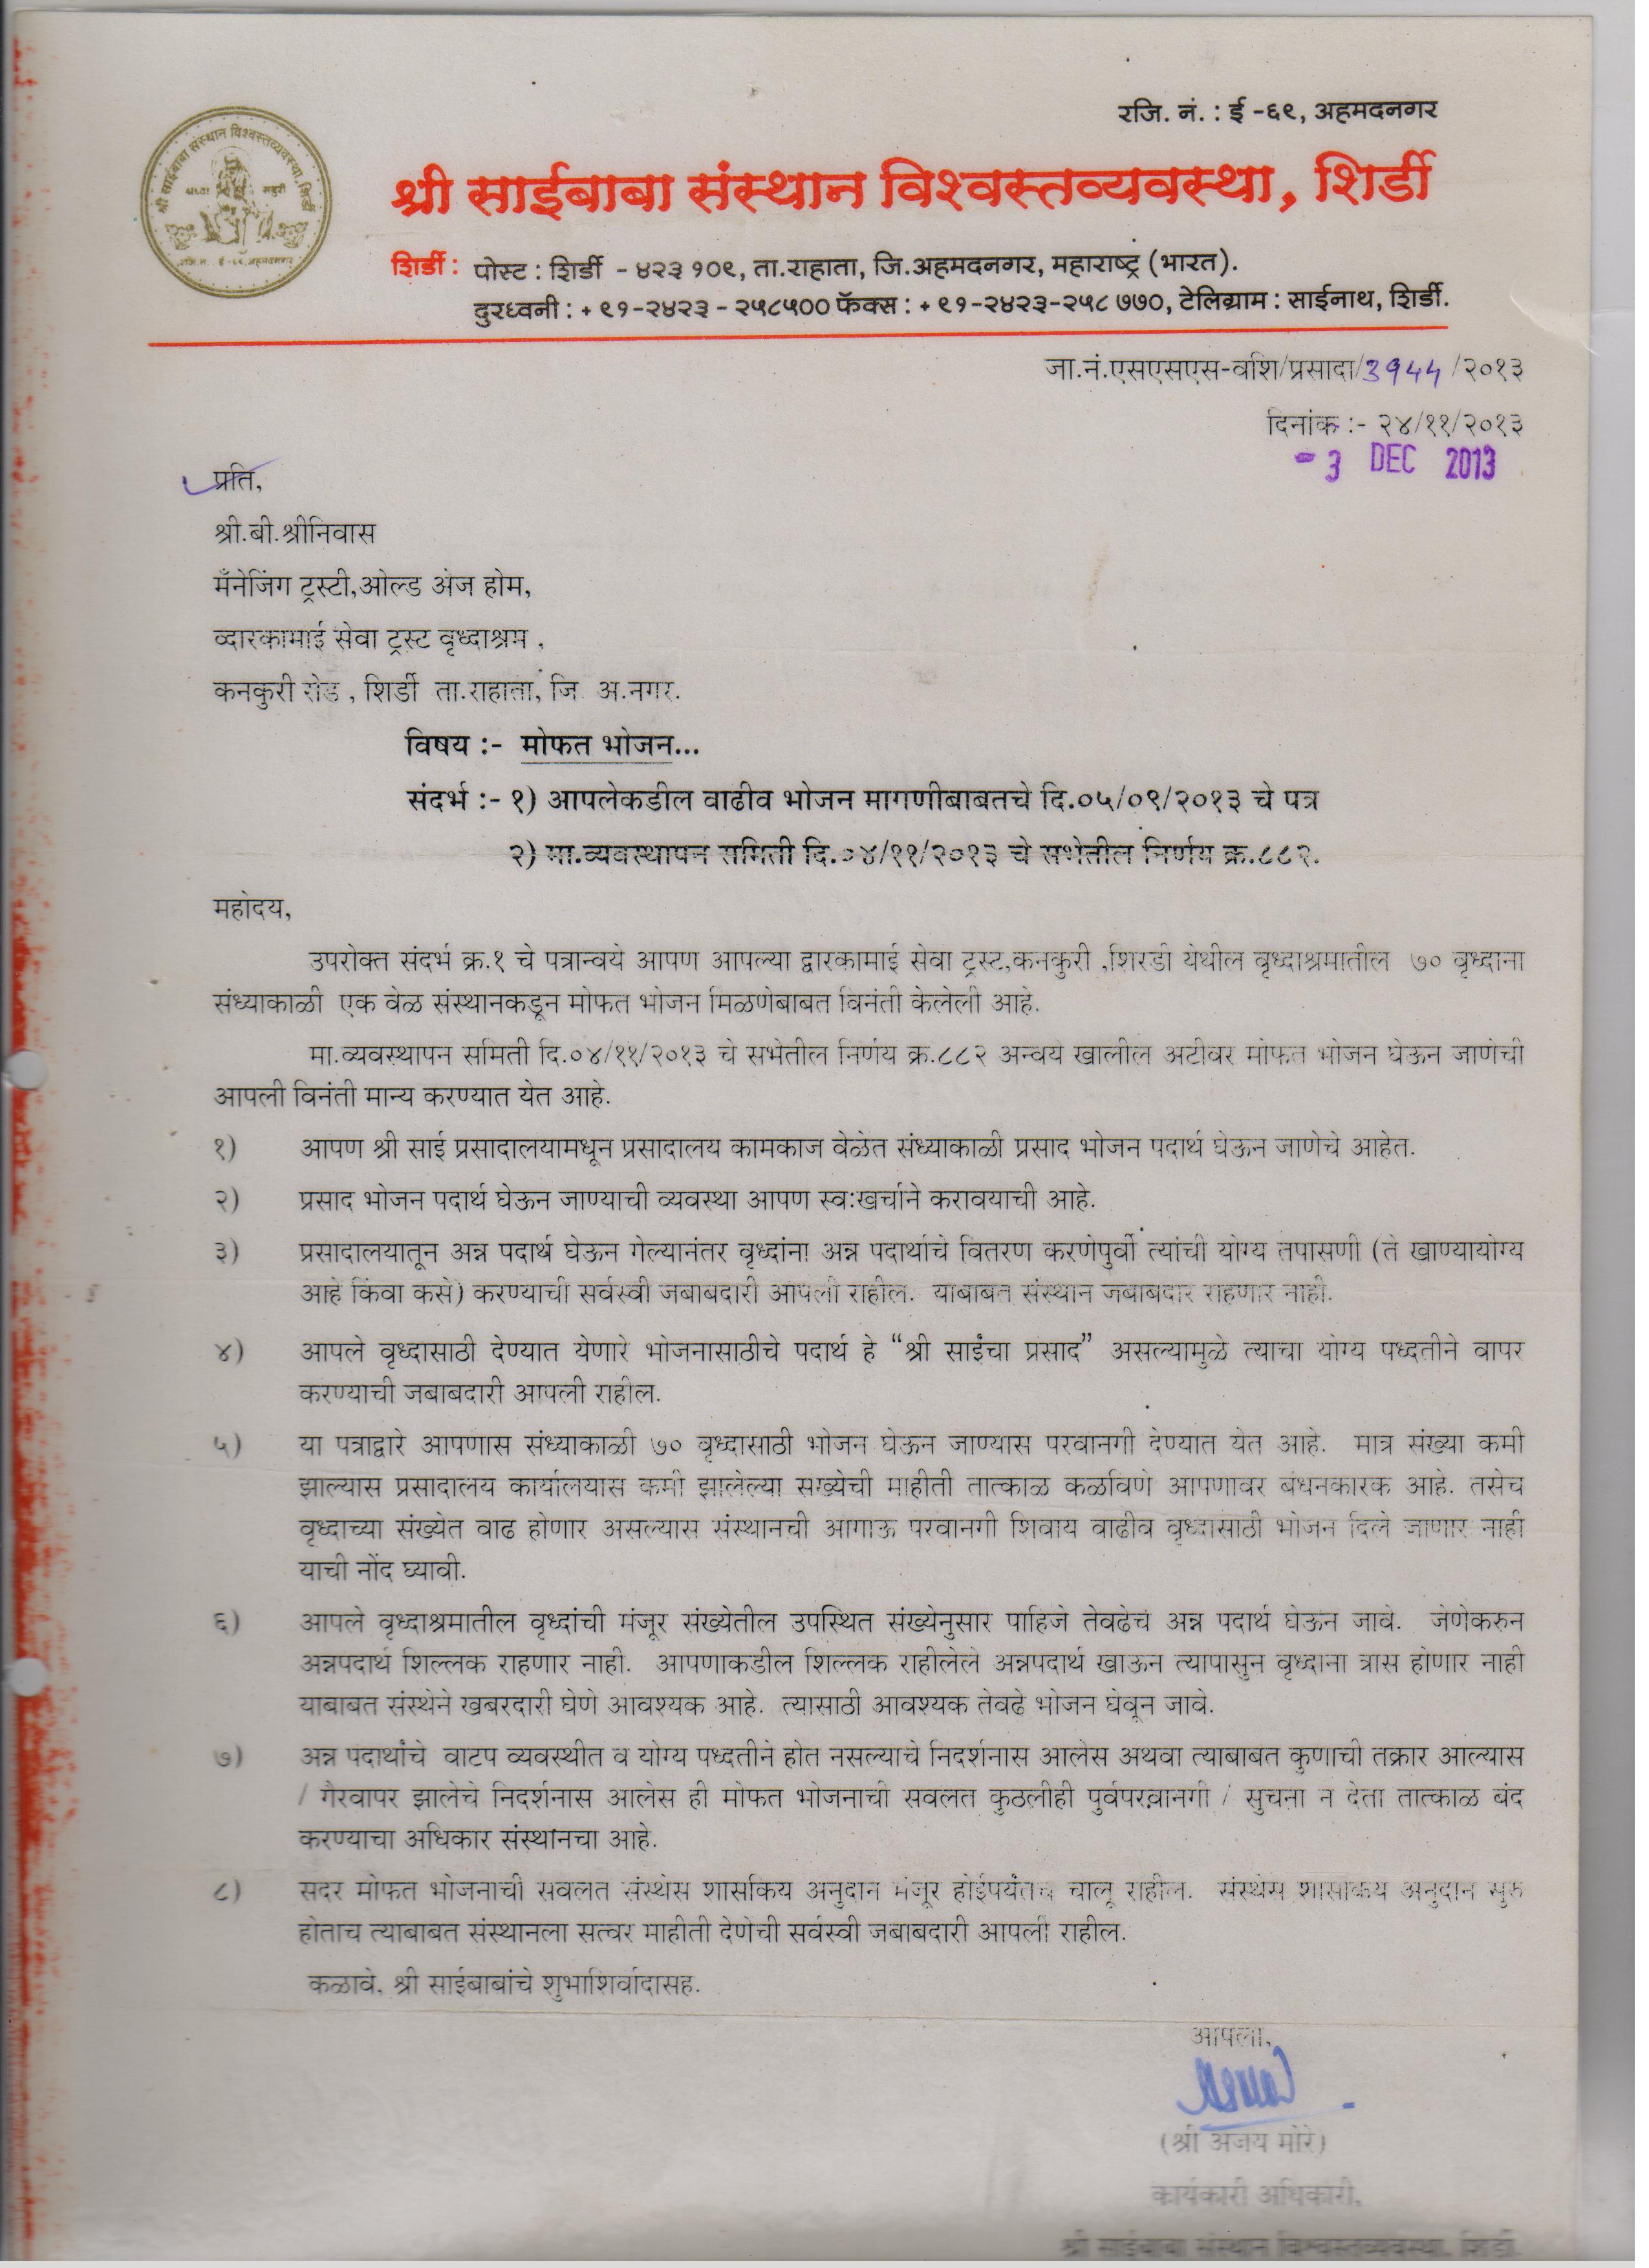 Dwaraka Mai Seva Trust Certificates